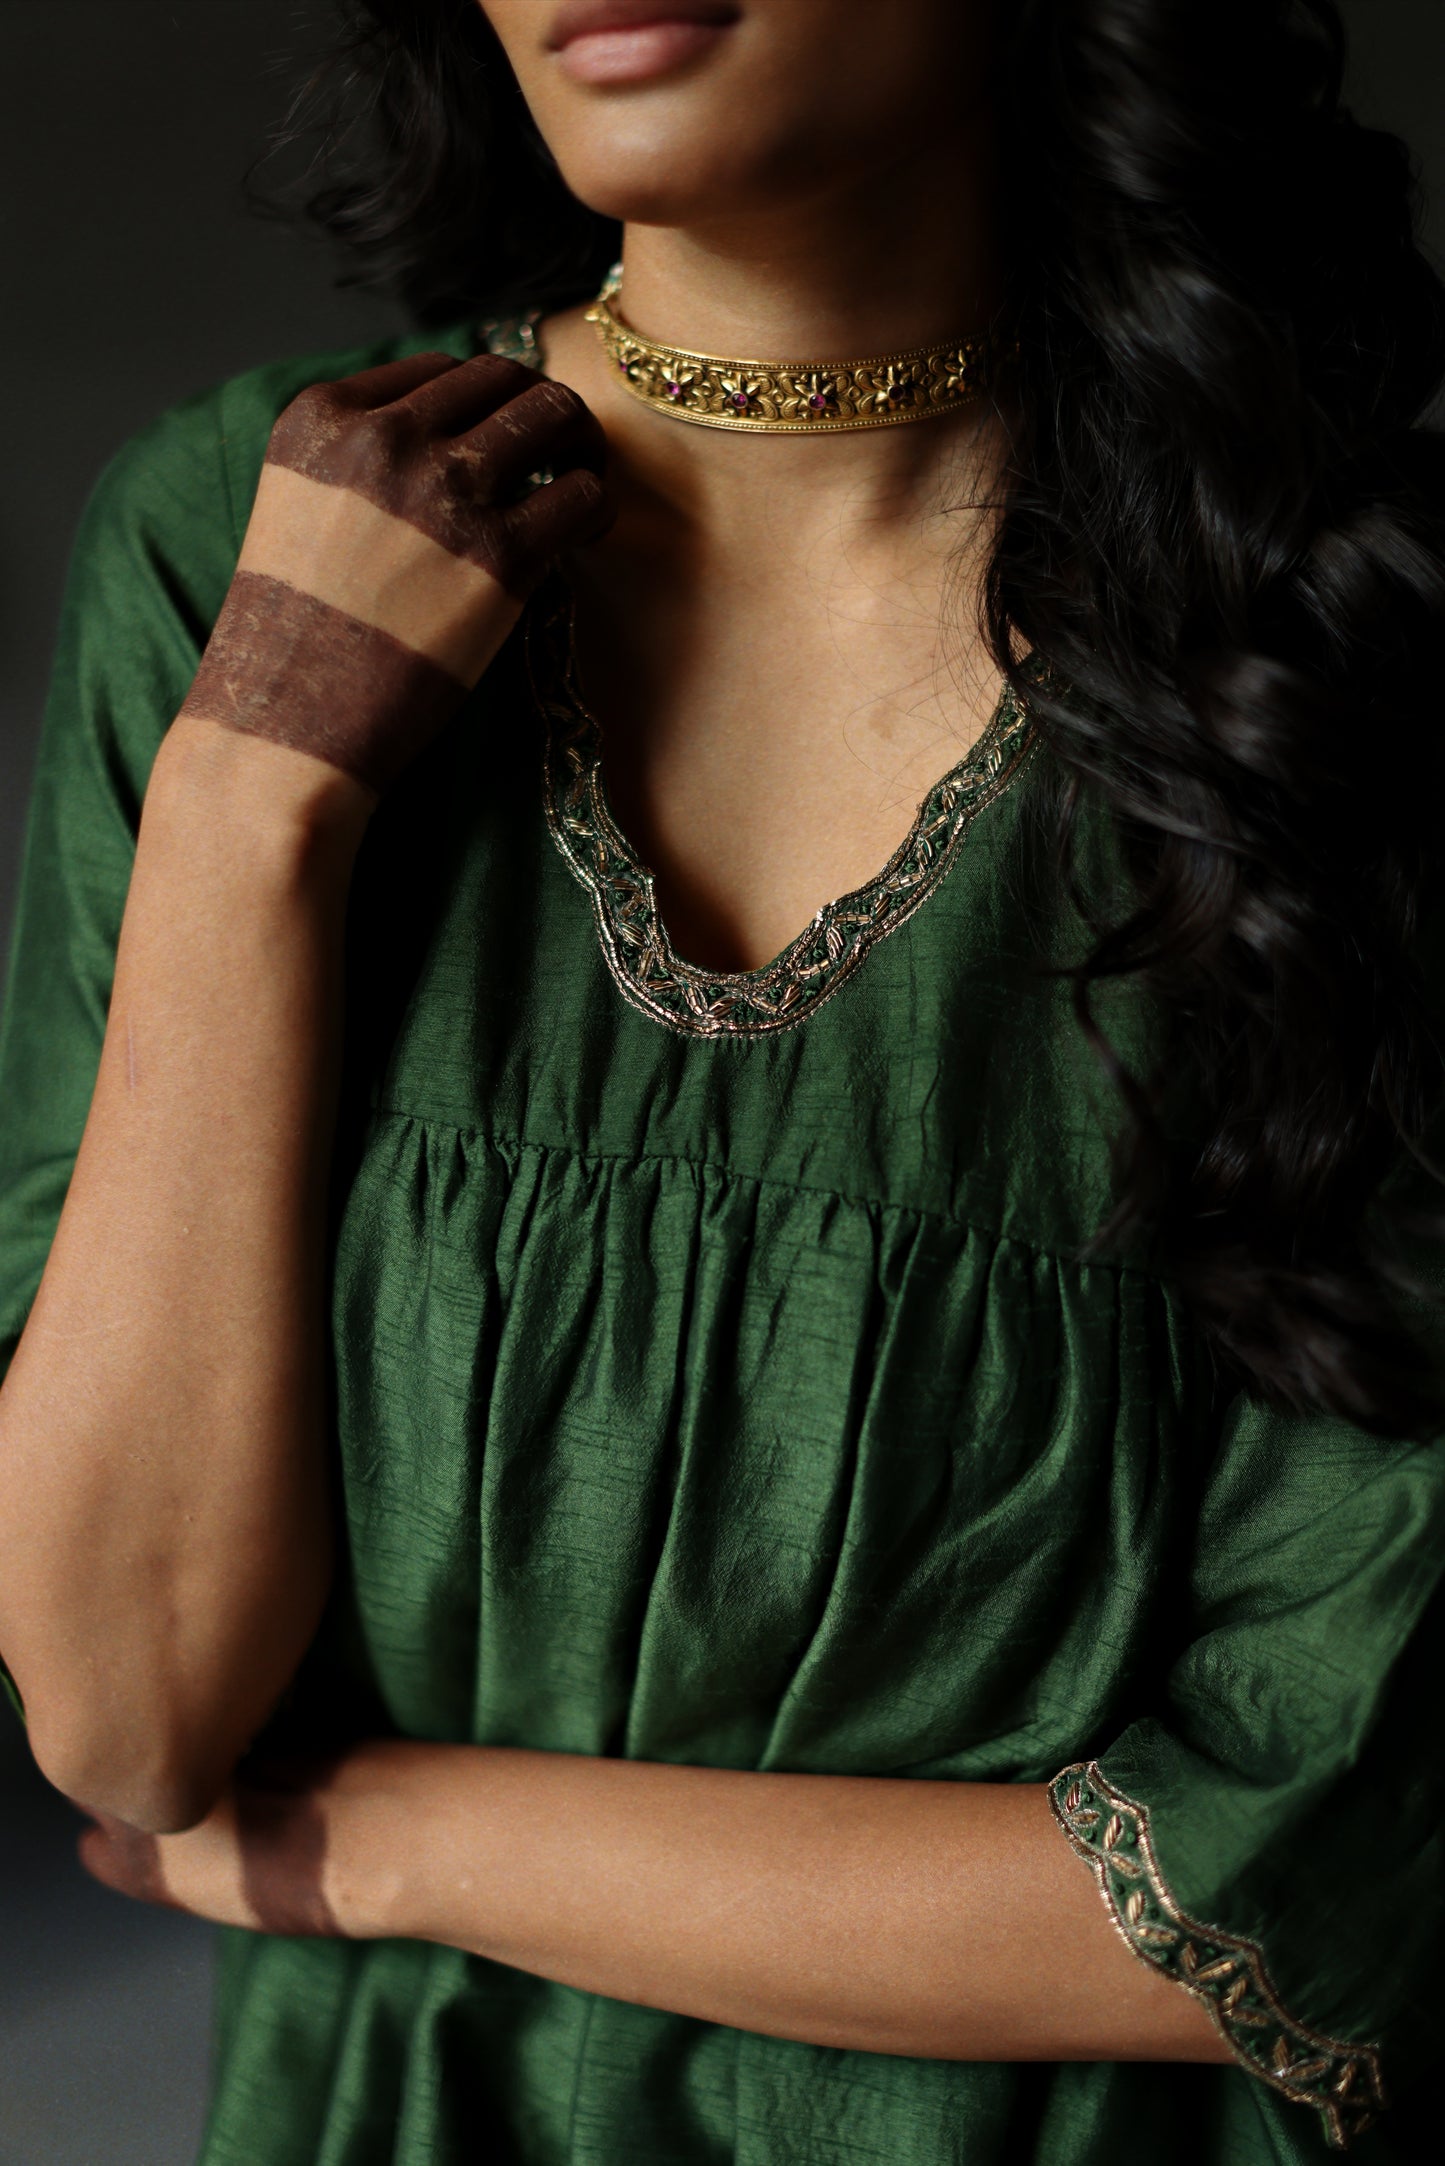 Empireline Kurta in Emerald Green Raw Silk with Shalwar